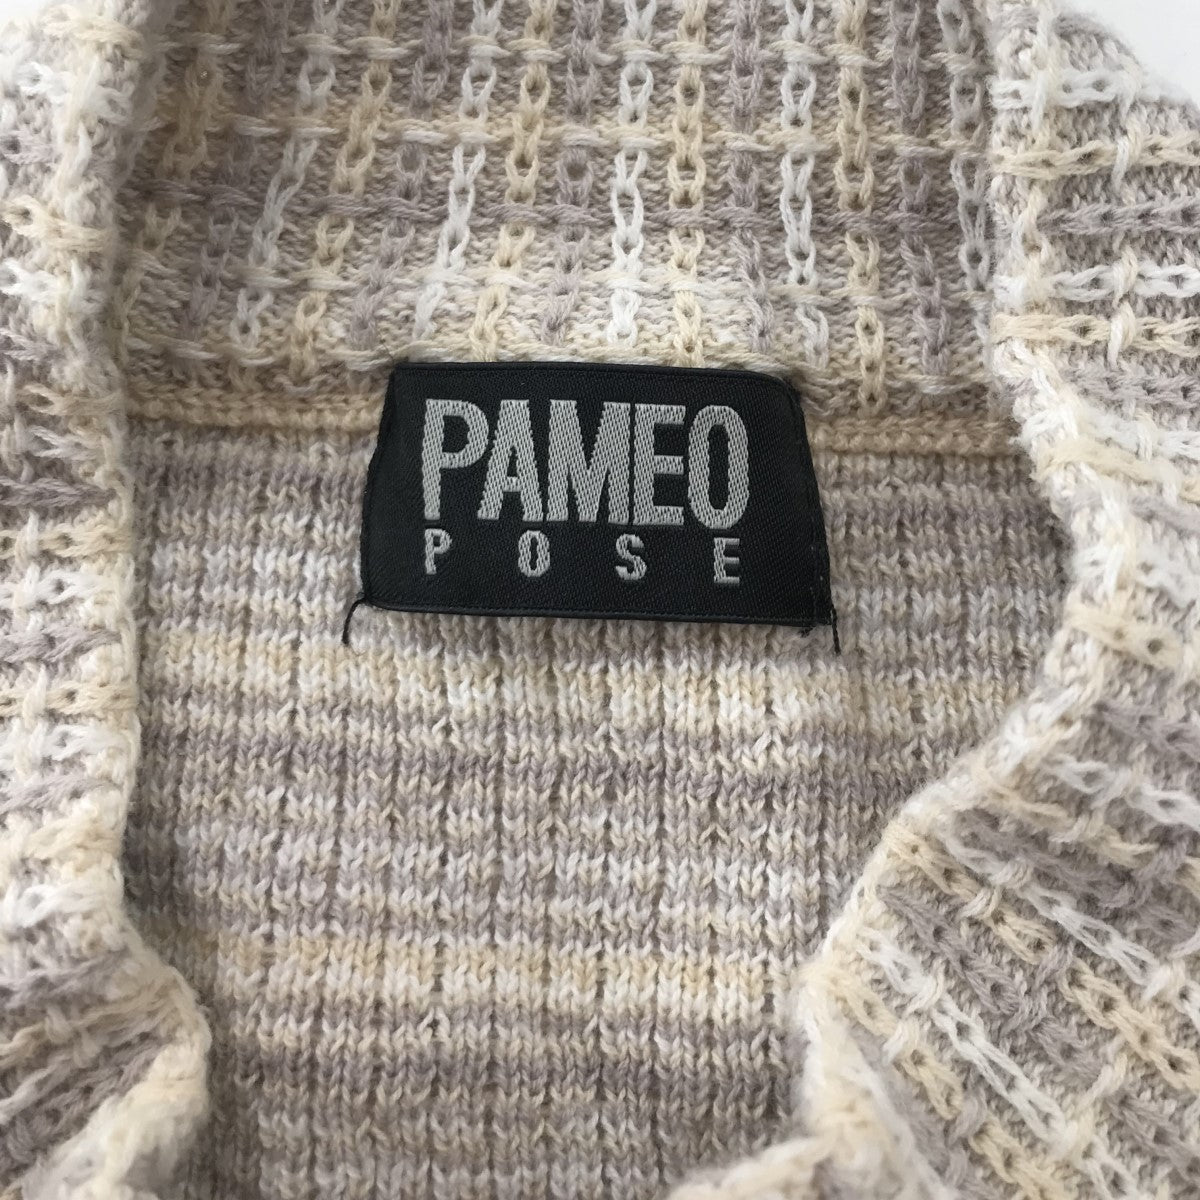 PAMEO POSE(パメオ ポーズ) 「Meifan knit Tops」 ニットトップス 2322226002 2322226002  グレー×ベージュ×ブルー サイズ F｜【公式】カインドオルオンライン ブランド古着・中古通販【kindal】